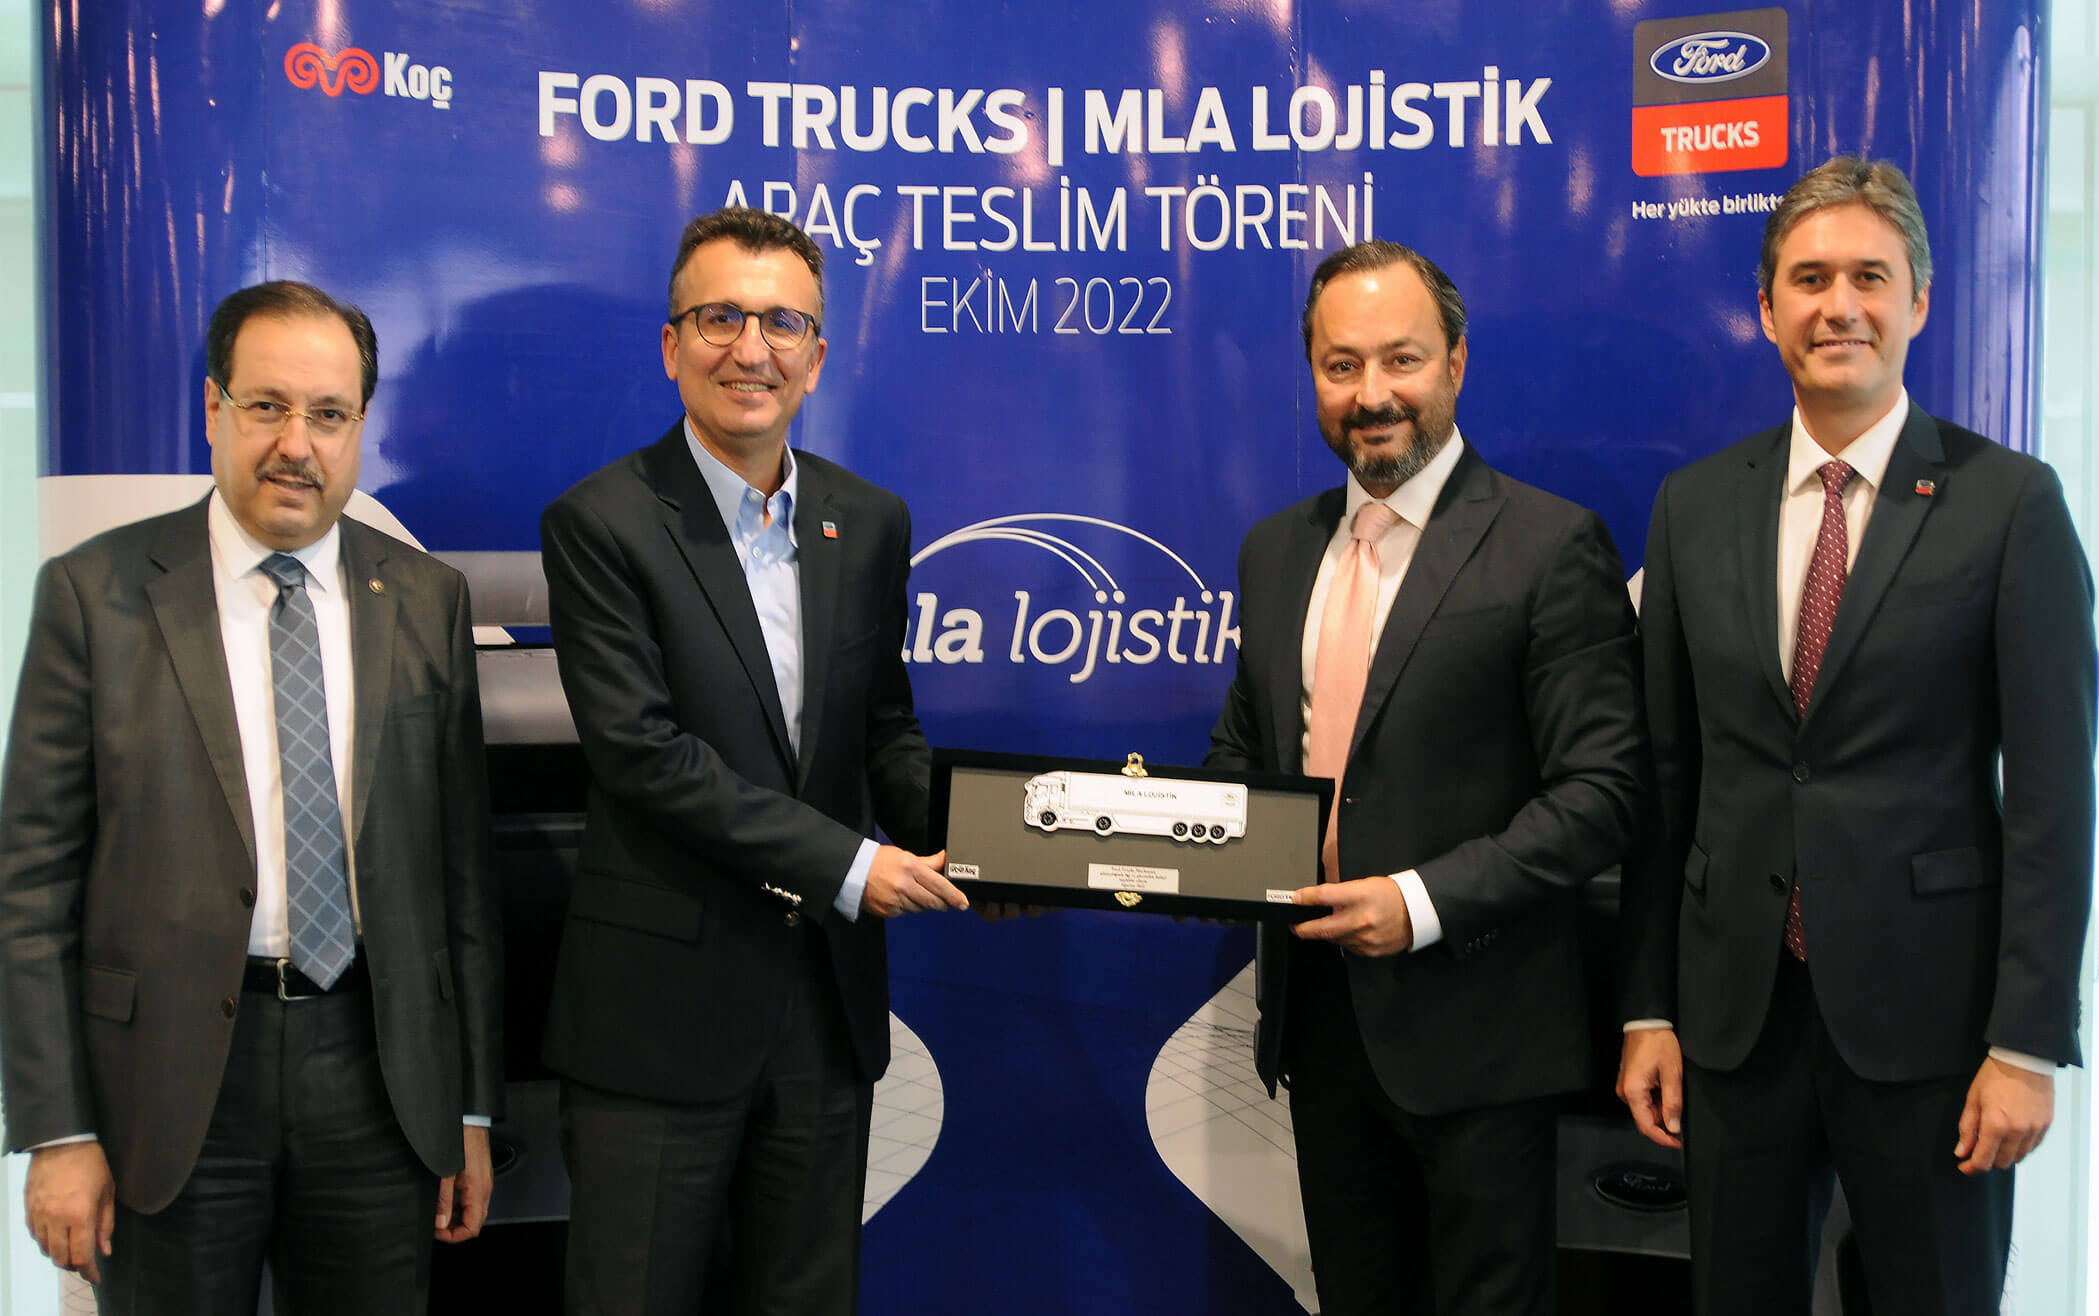 MLA Lojistik, filosunu Ford Trucks çekici araçlarla genişletti